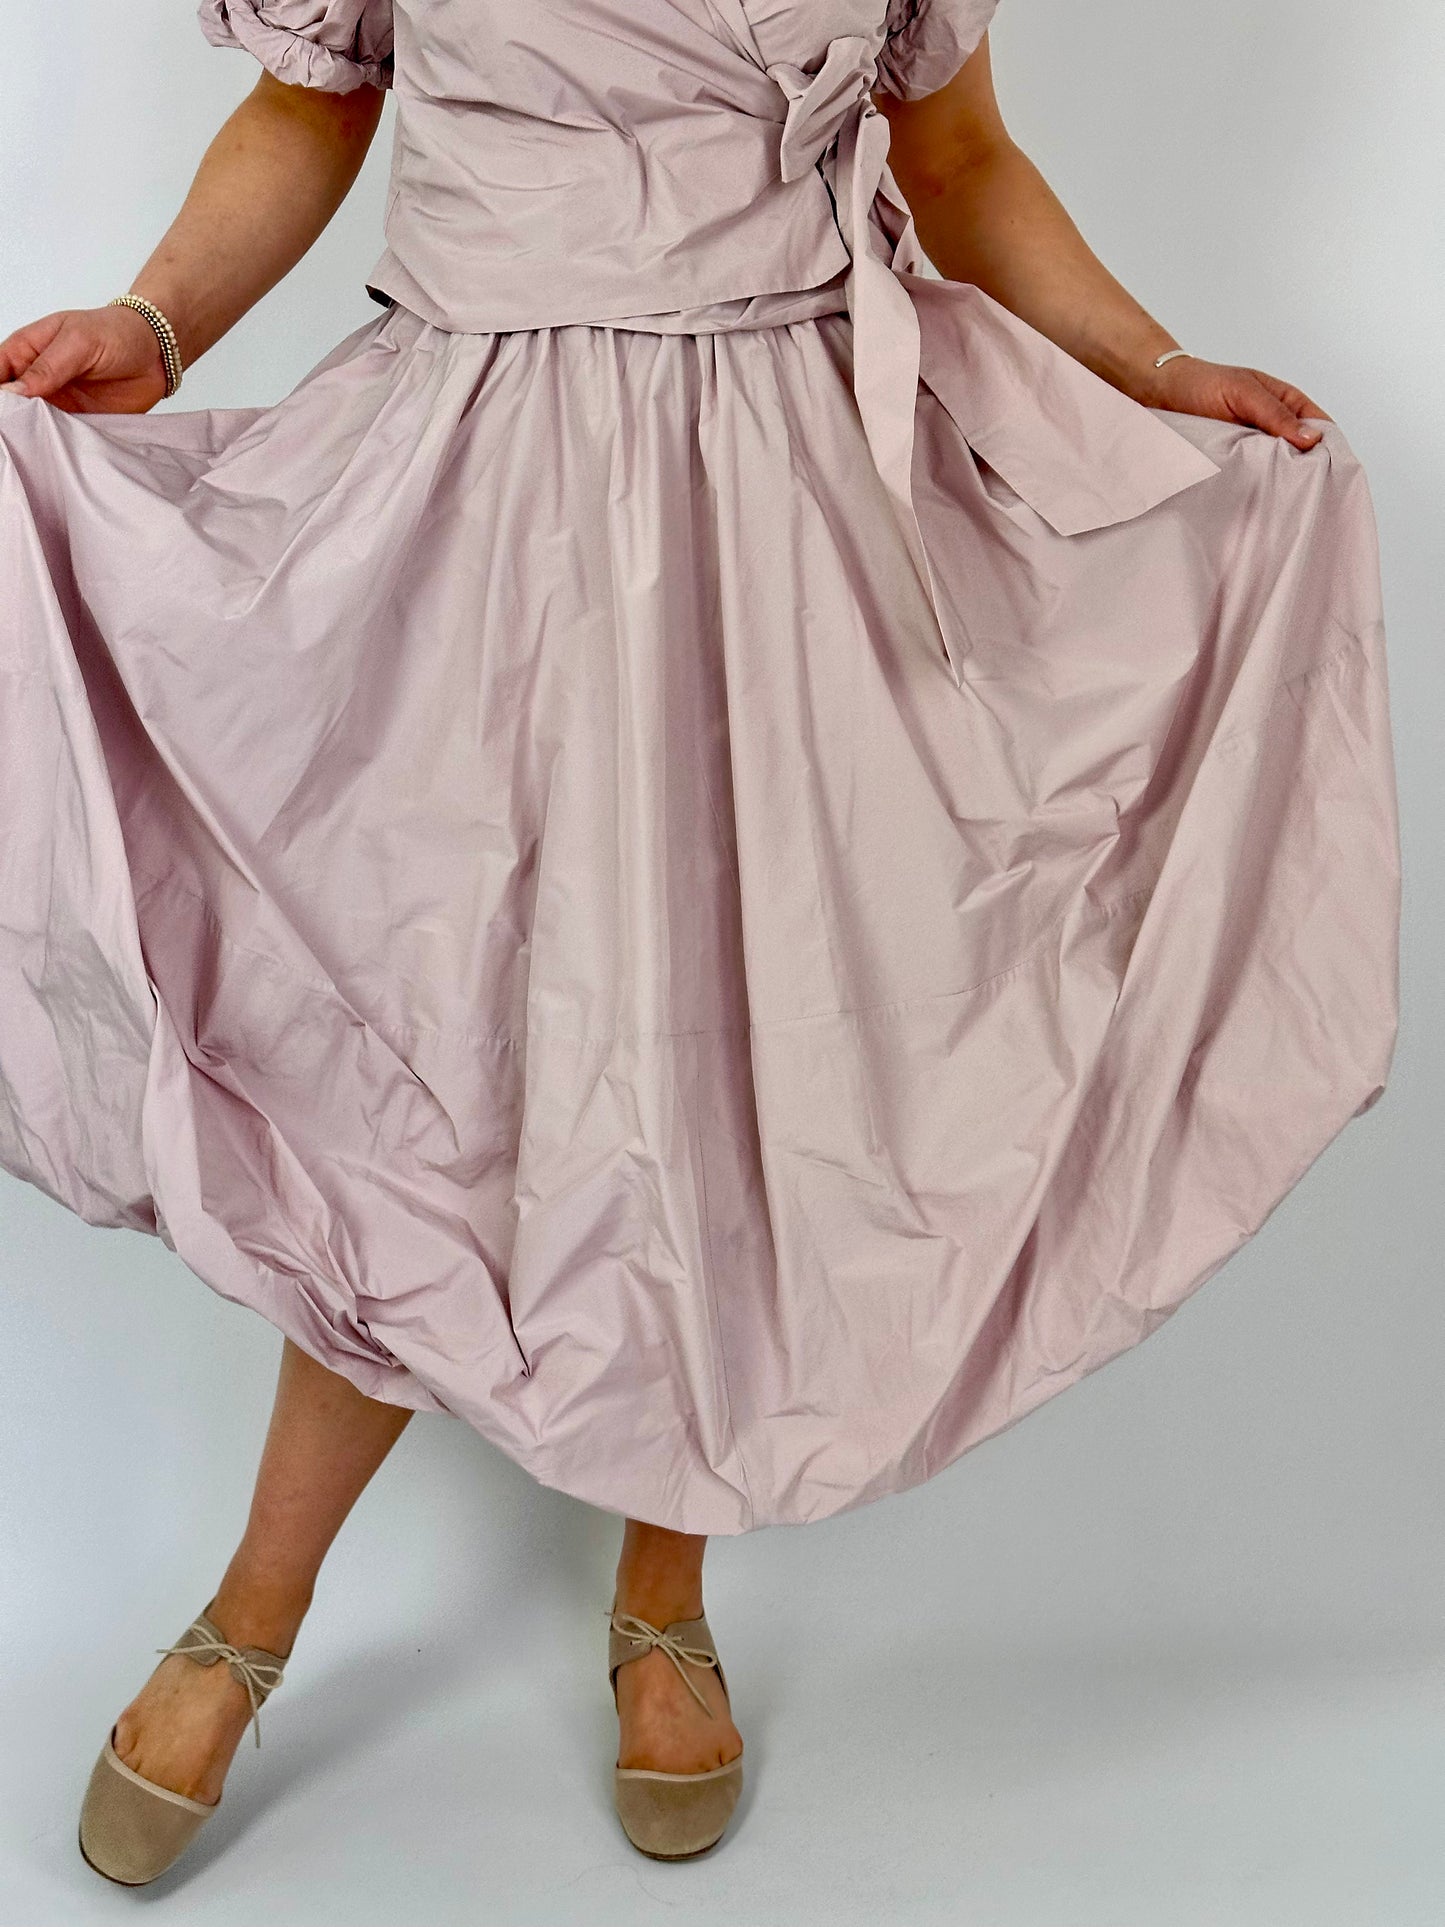 LFDA 566 Skirt Pink